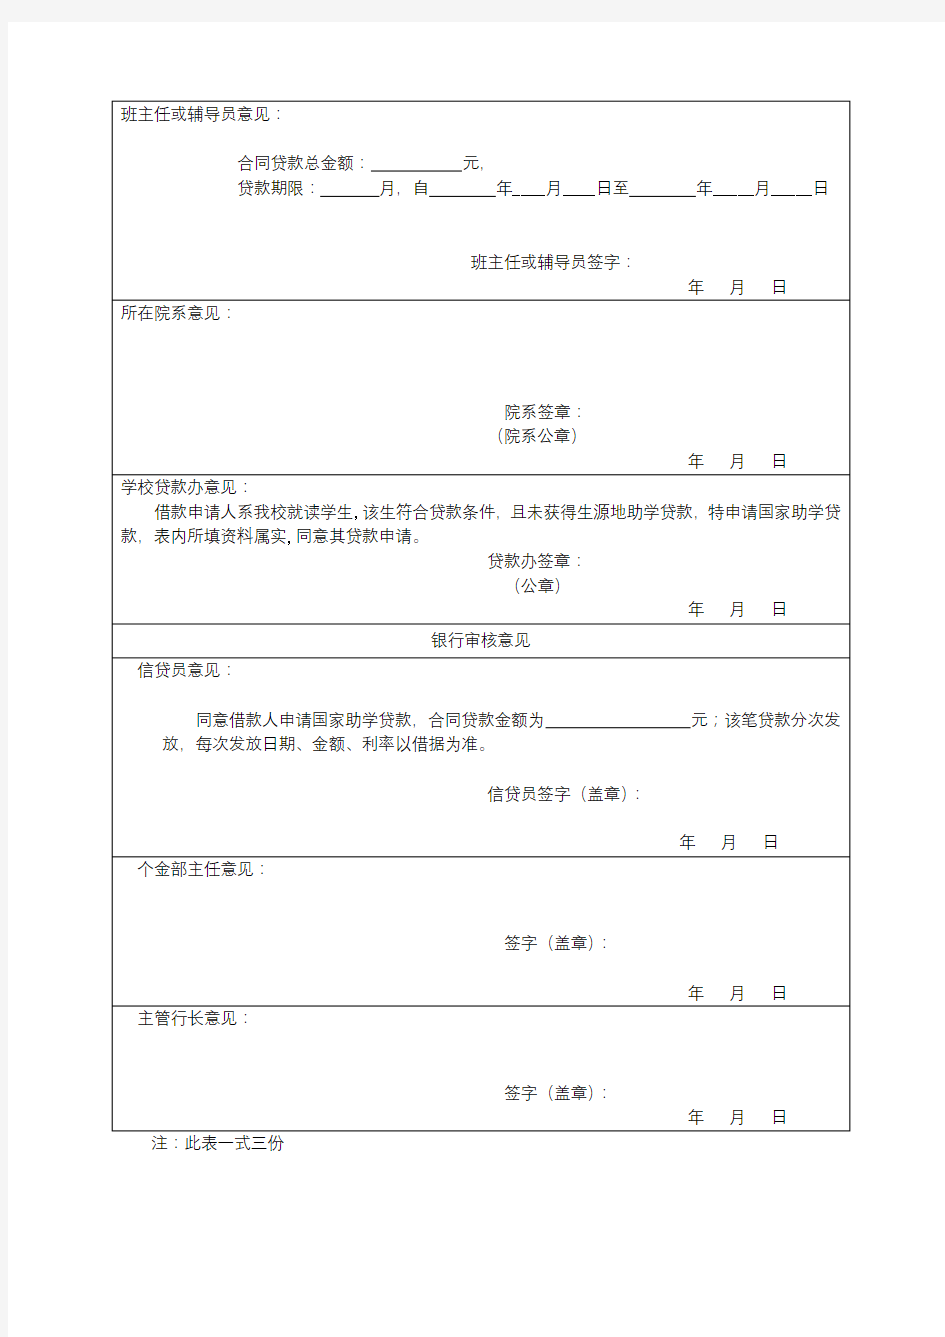 中国银行陕西省分行国家助学贷款申请审批表【模板】